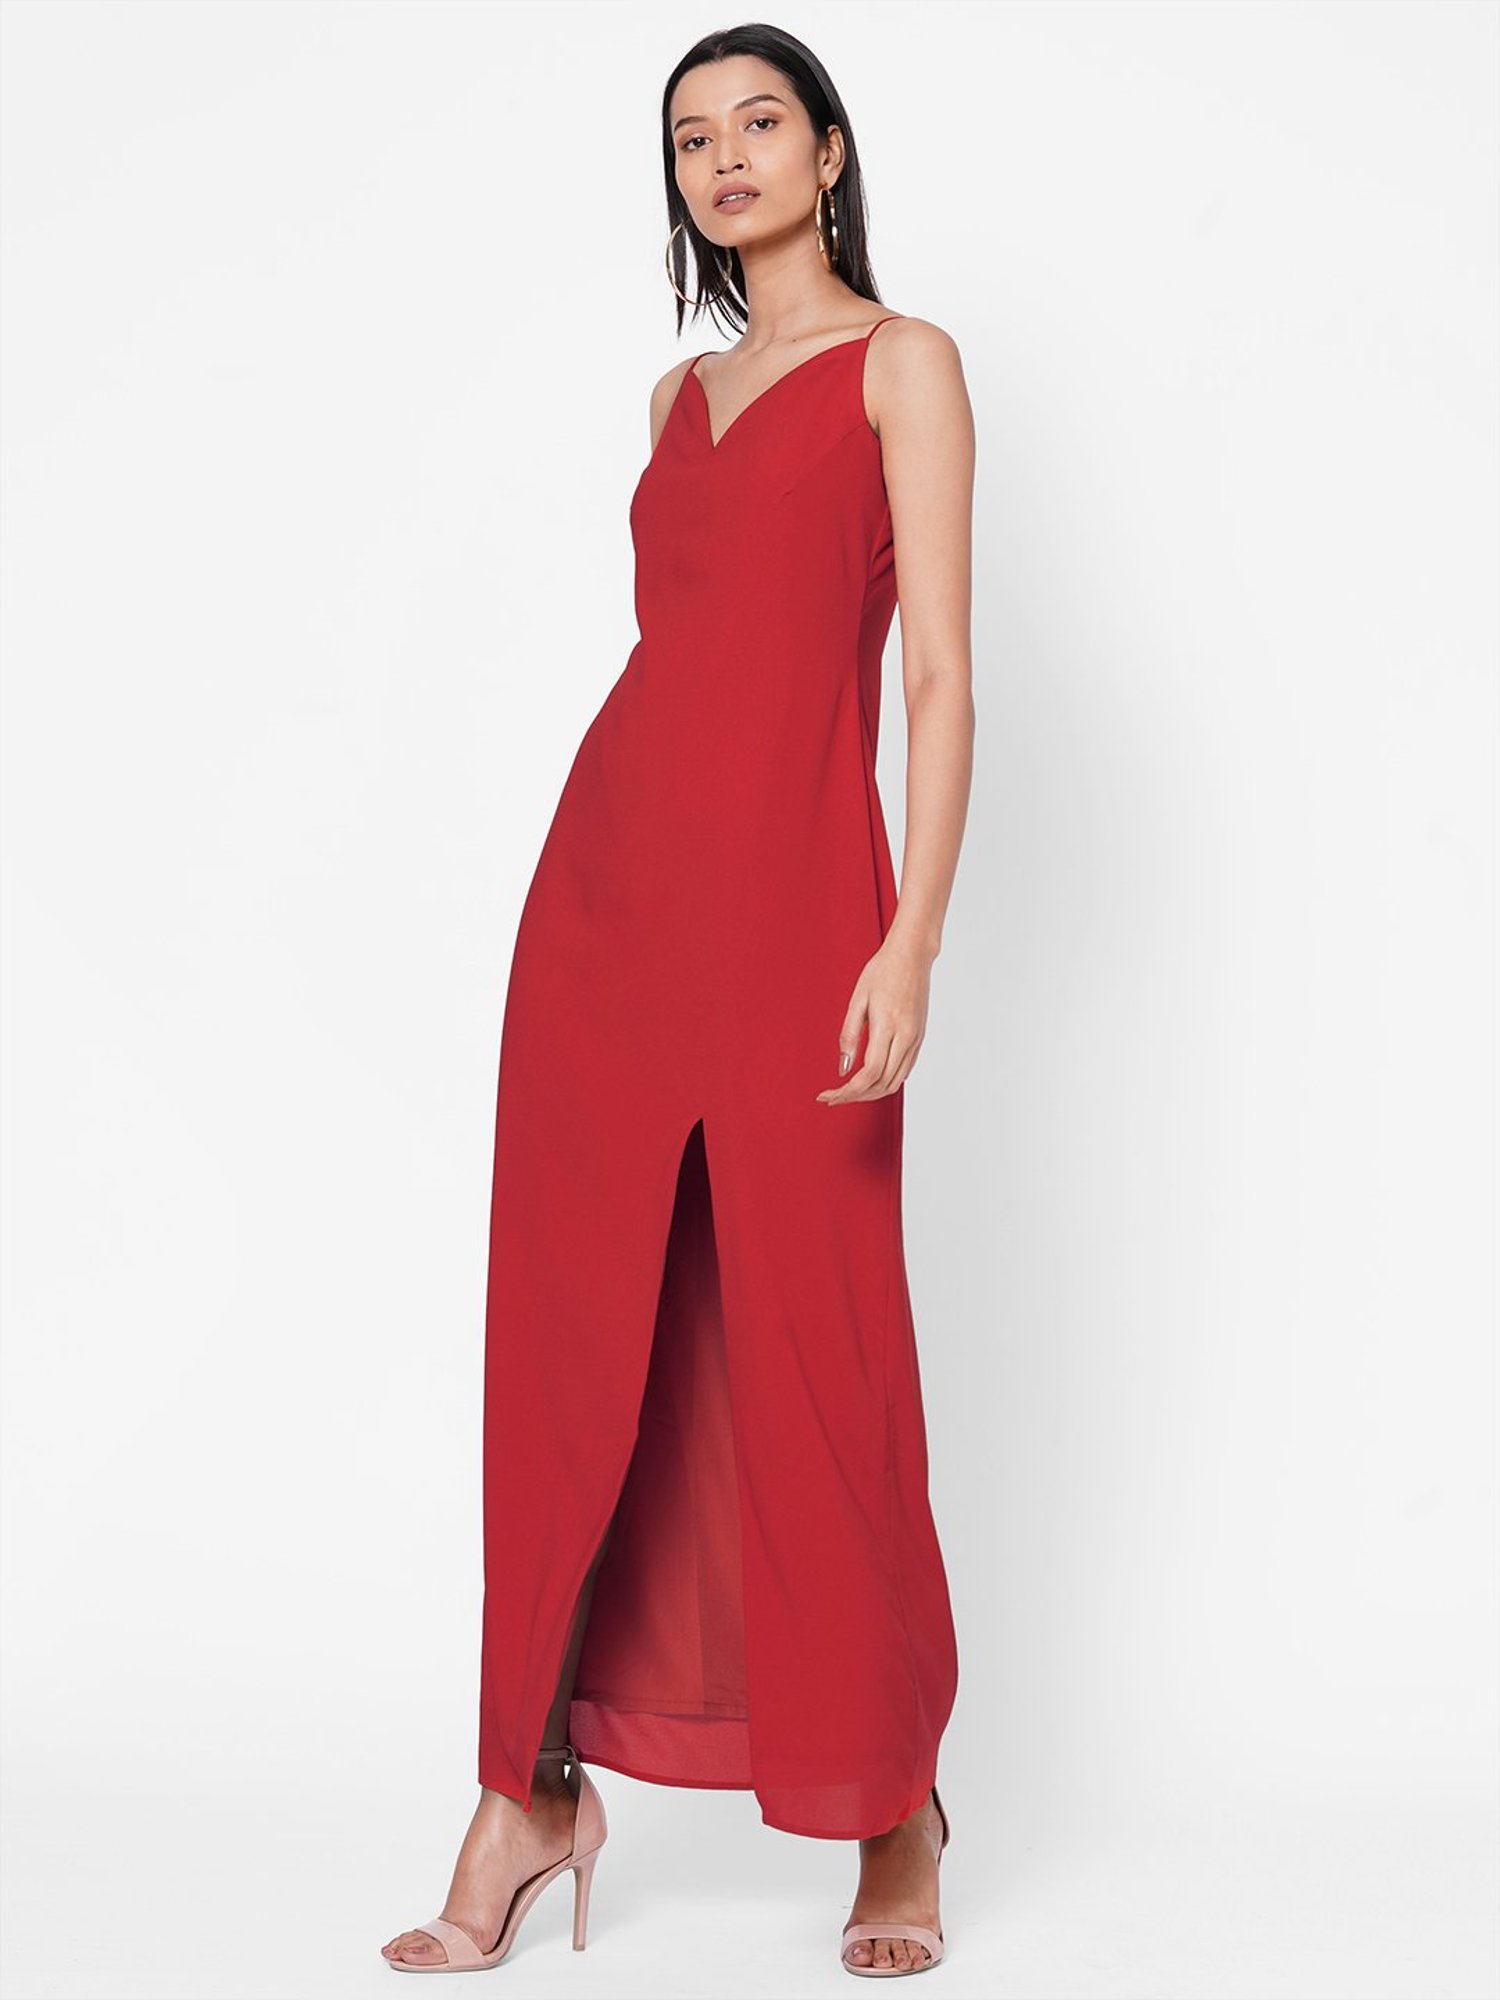 Garnet Red Georgette Long Dress For Women Online